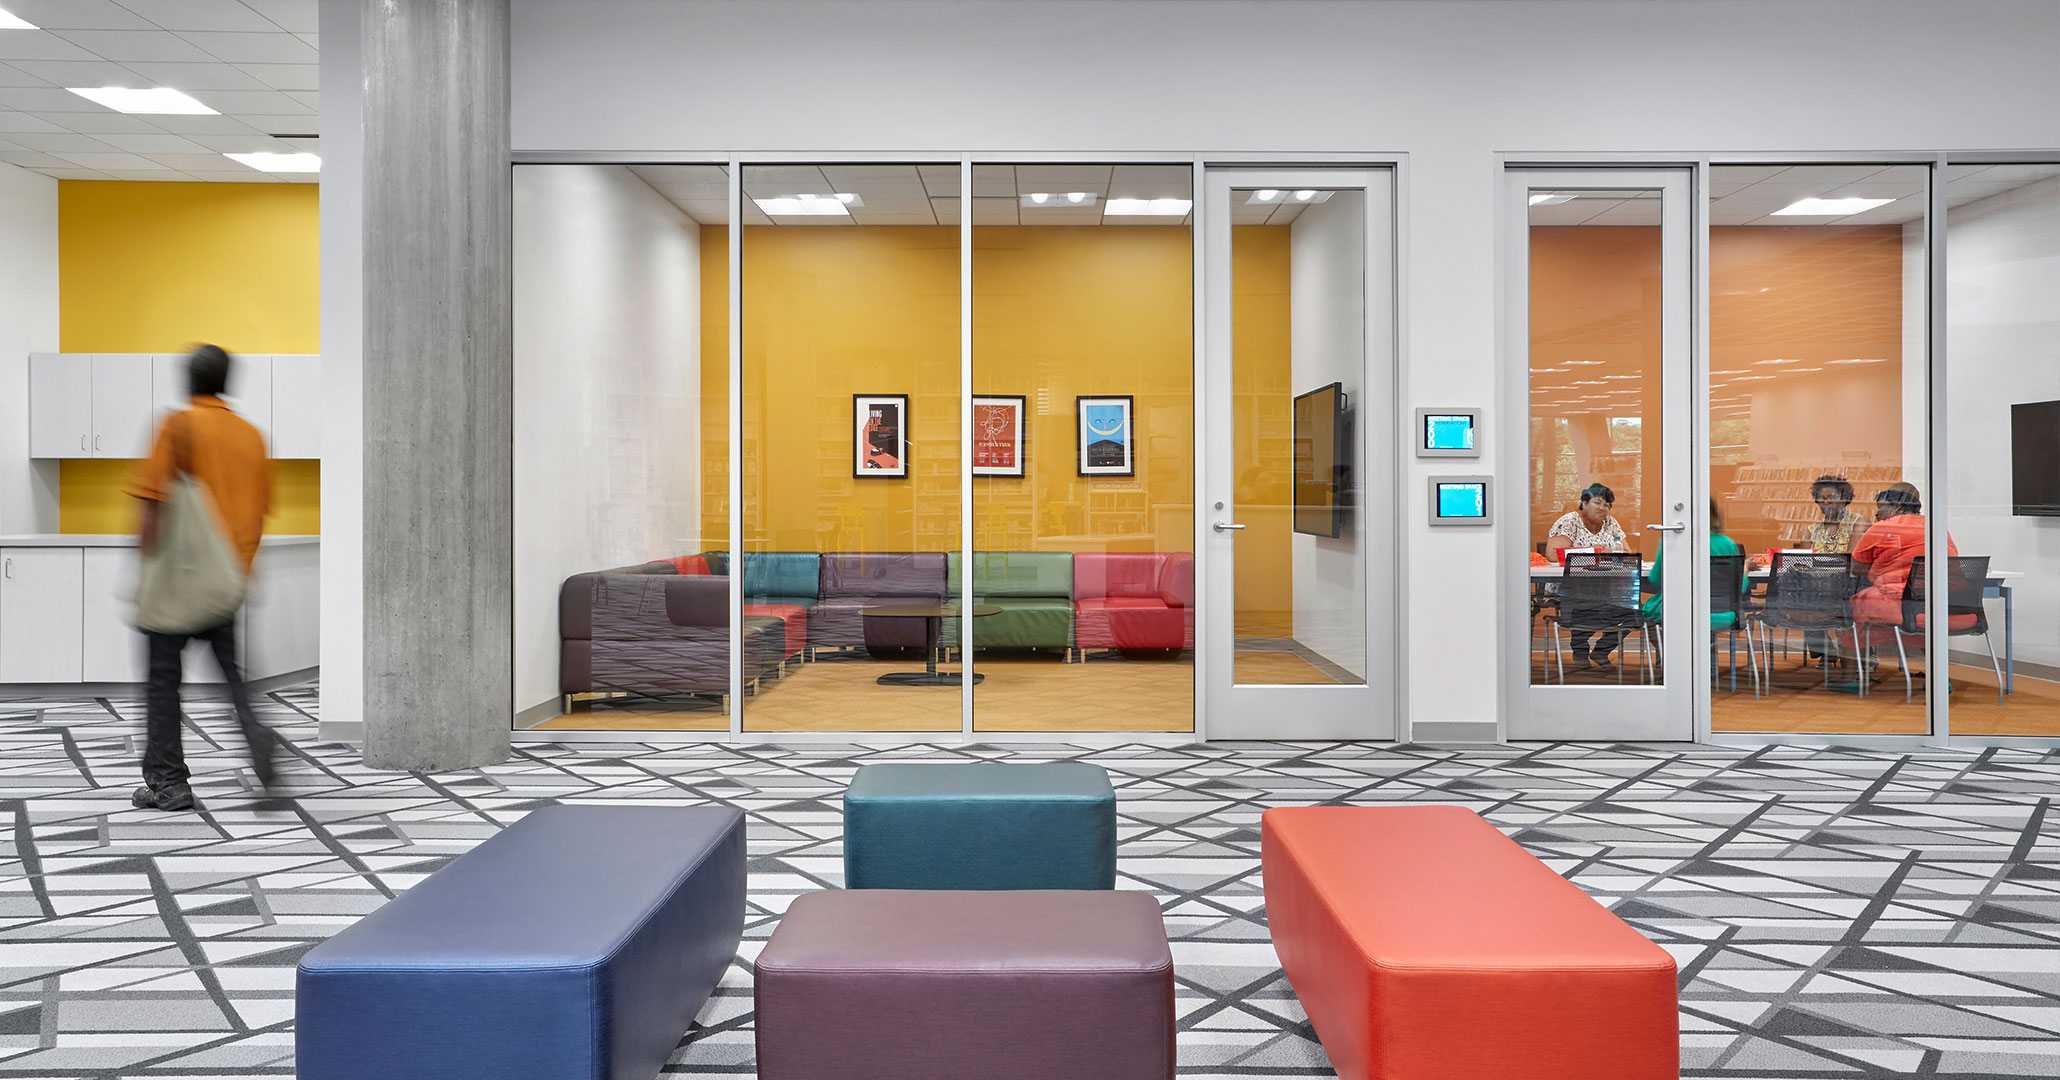 Boudreaux designed comfortable spaces for public library patrons.